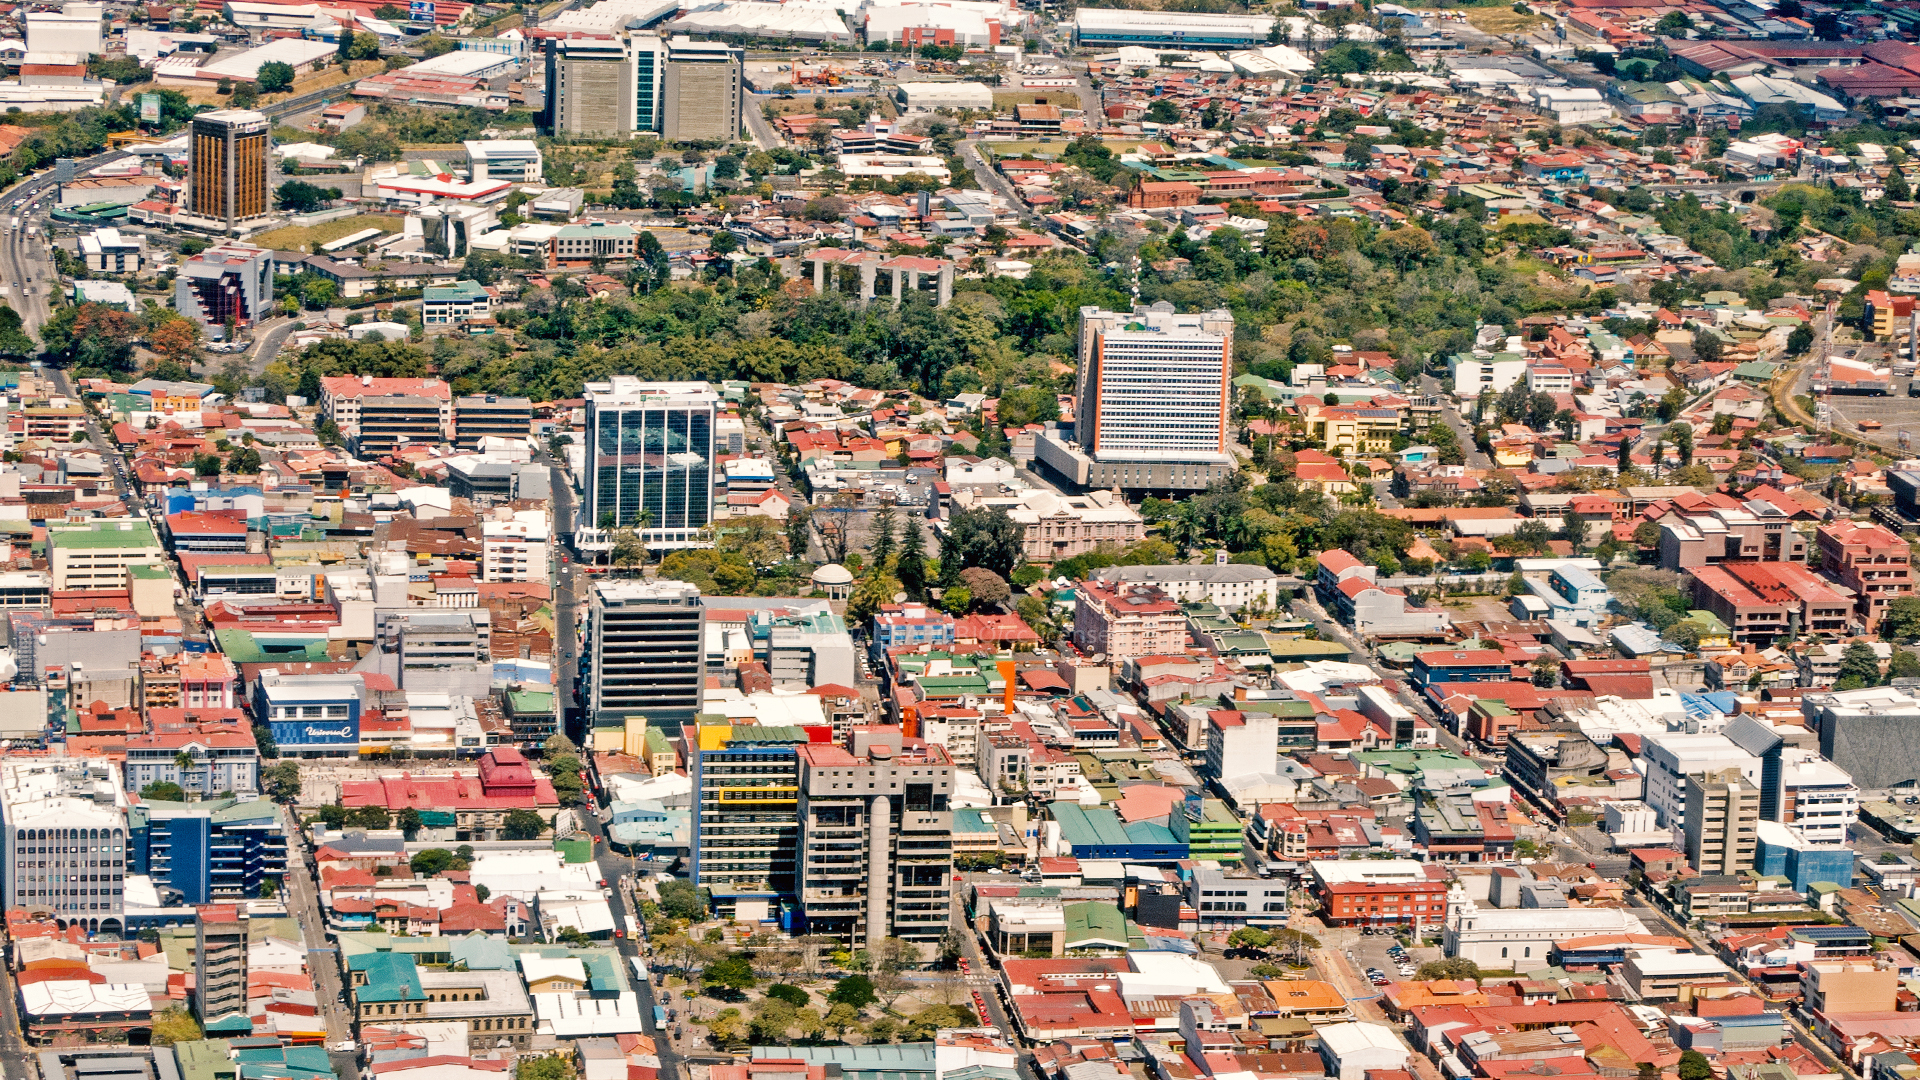 Aerial view of San José de Costa Rica